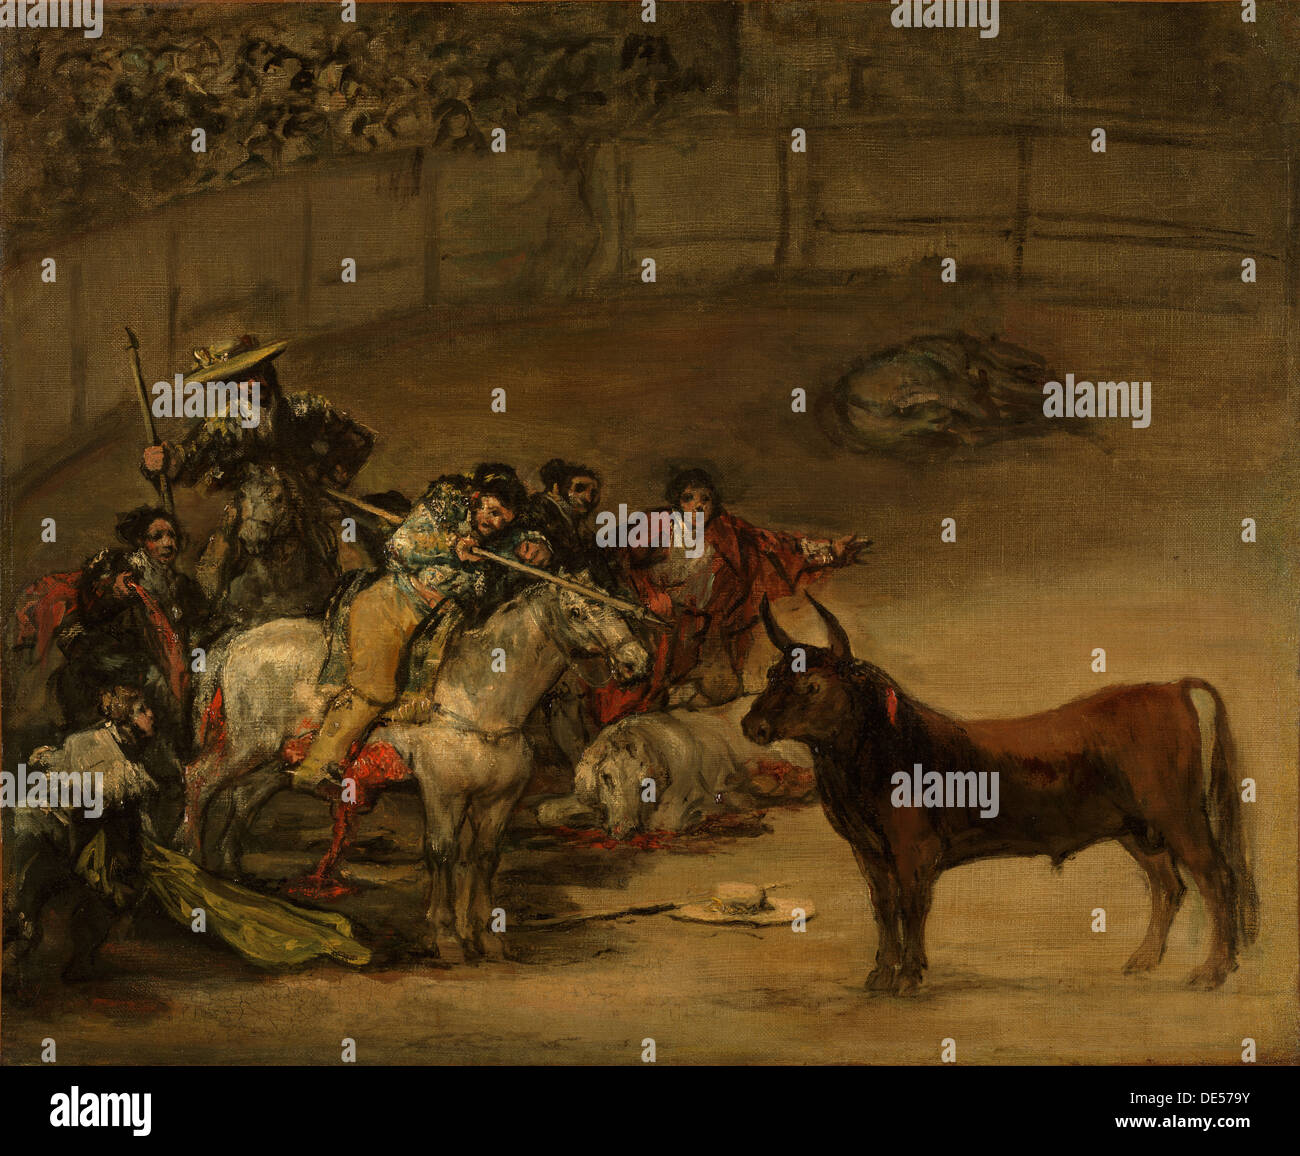 Corrida de toros, suerte de varas; Francisco José de Goya y Lucientes (Francisco de Goya), español, 1746 - 1828; 1824; Óleo sobre lienzo Foto de stock